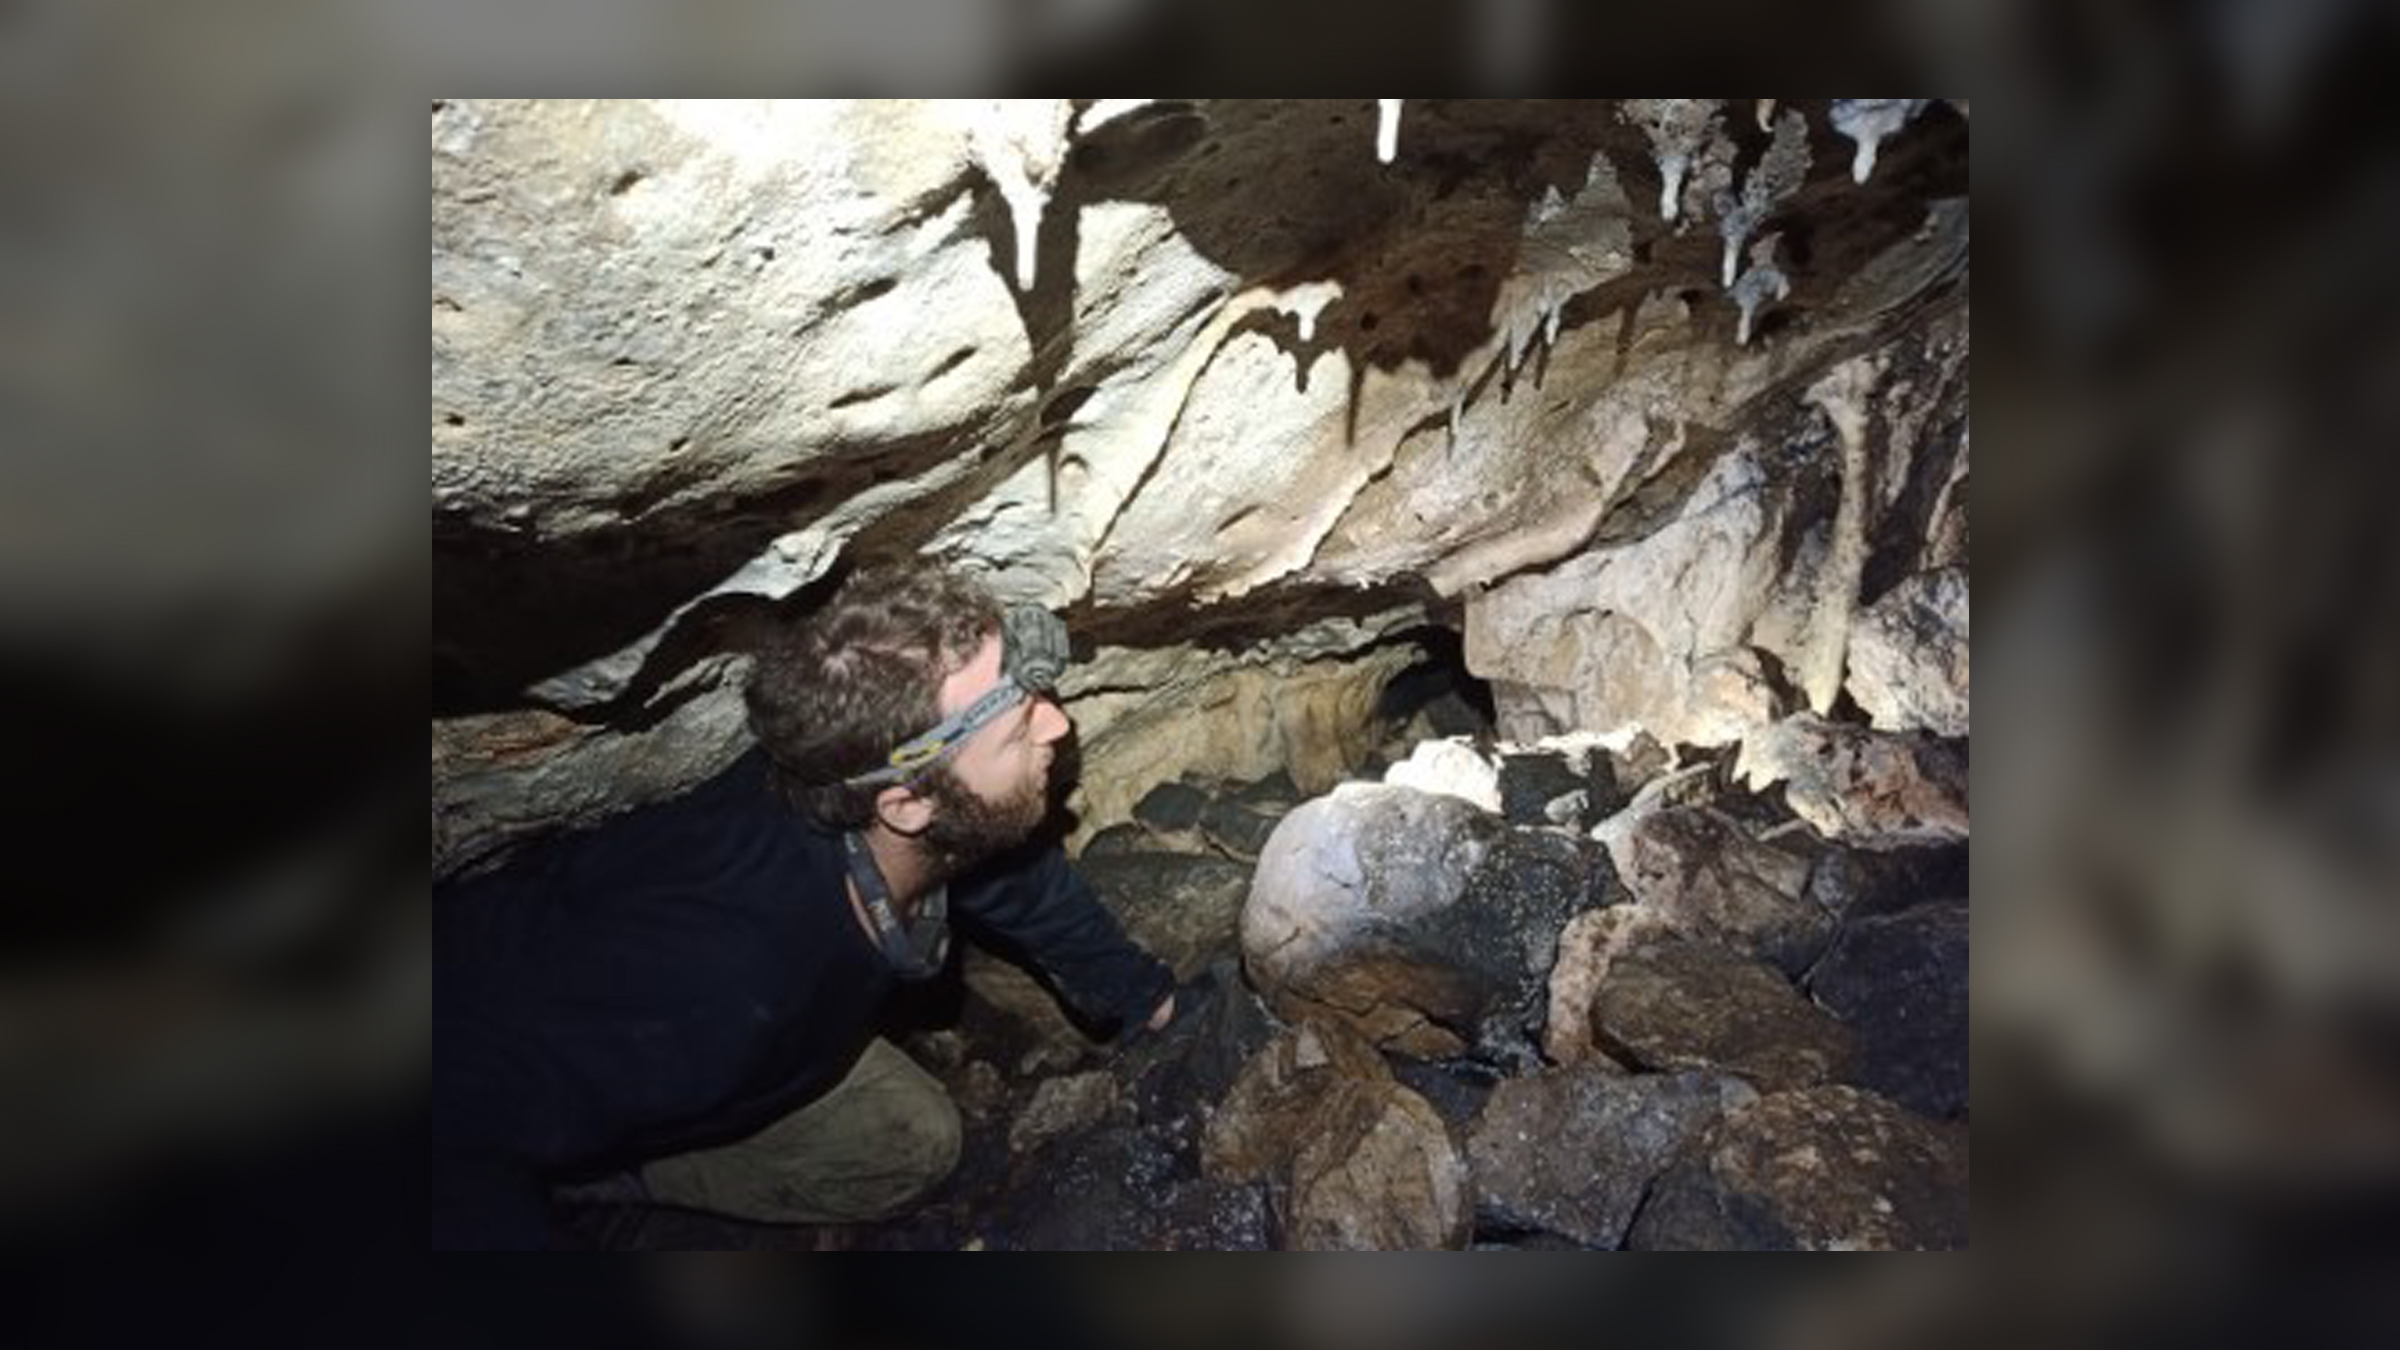 A man with a headlamp crawls on a rocky cave floor.